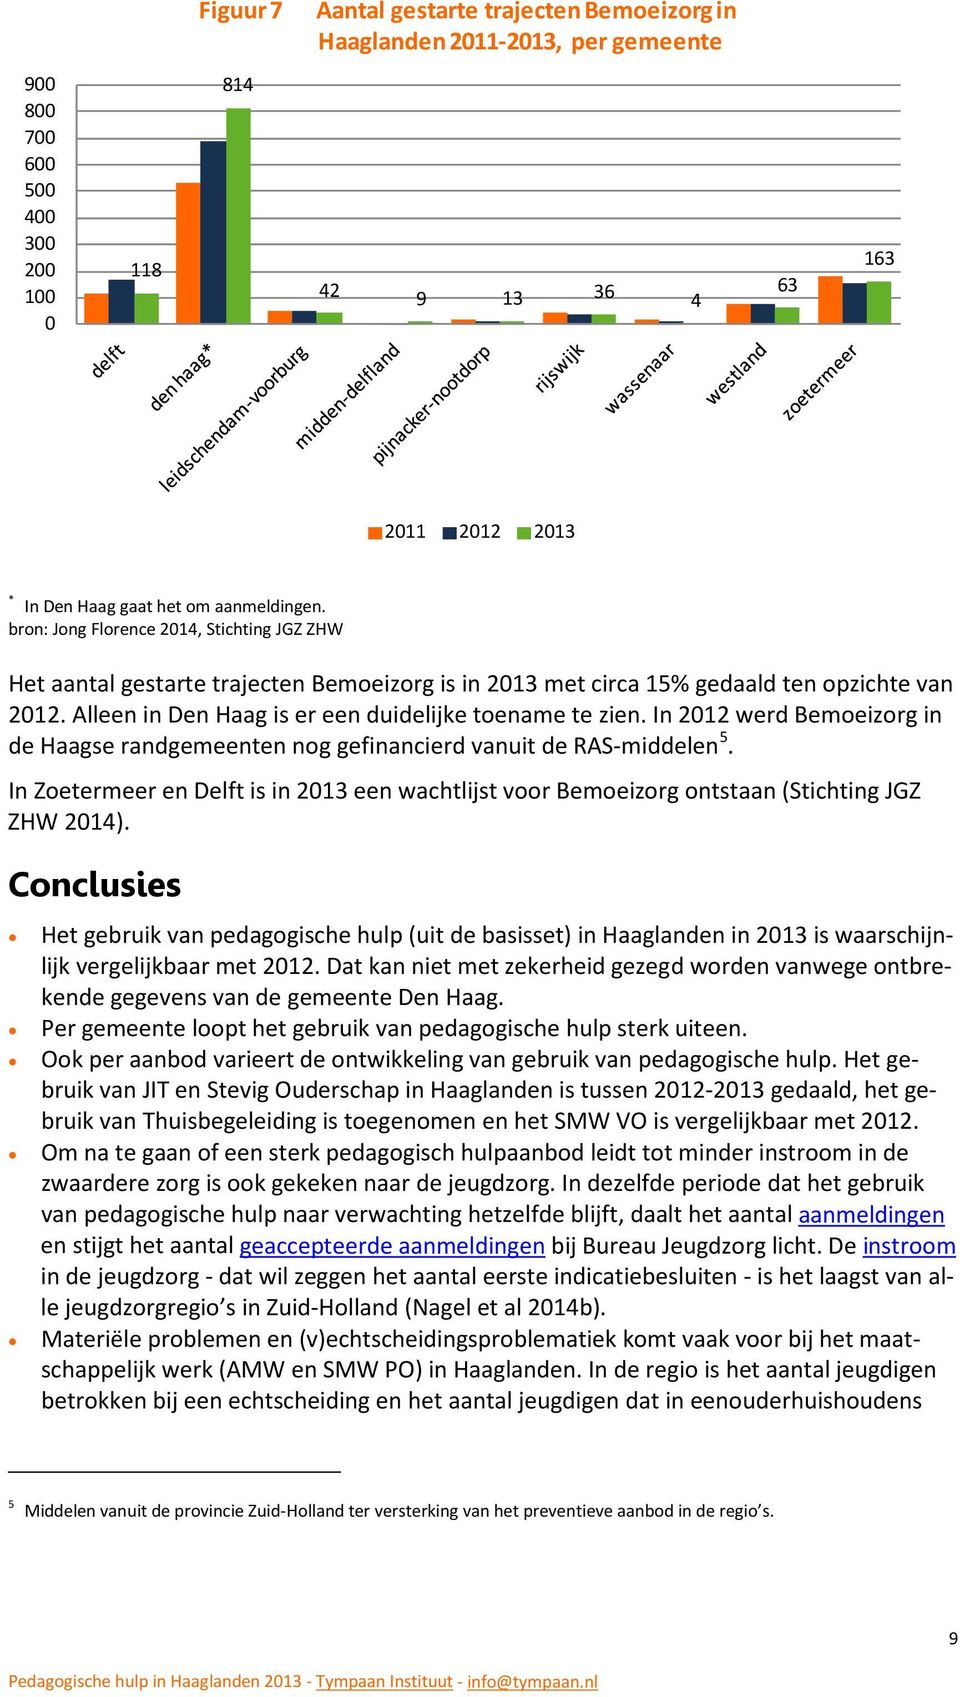 In 2012 werd Bemoeizorg in de Haagse randgemeenten nog gefinancierd vanuit de RAS-middelen 5. In Zoetermeer en Delft is in 2013 een wachtlijst voor Bemoeizorg ontstaan (Stichting JGZ ZHW 2014).